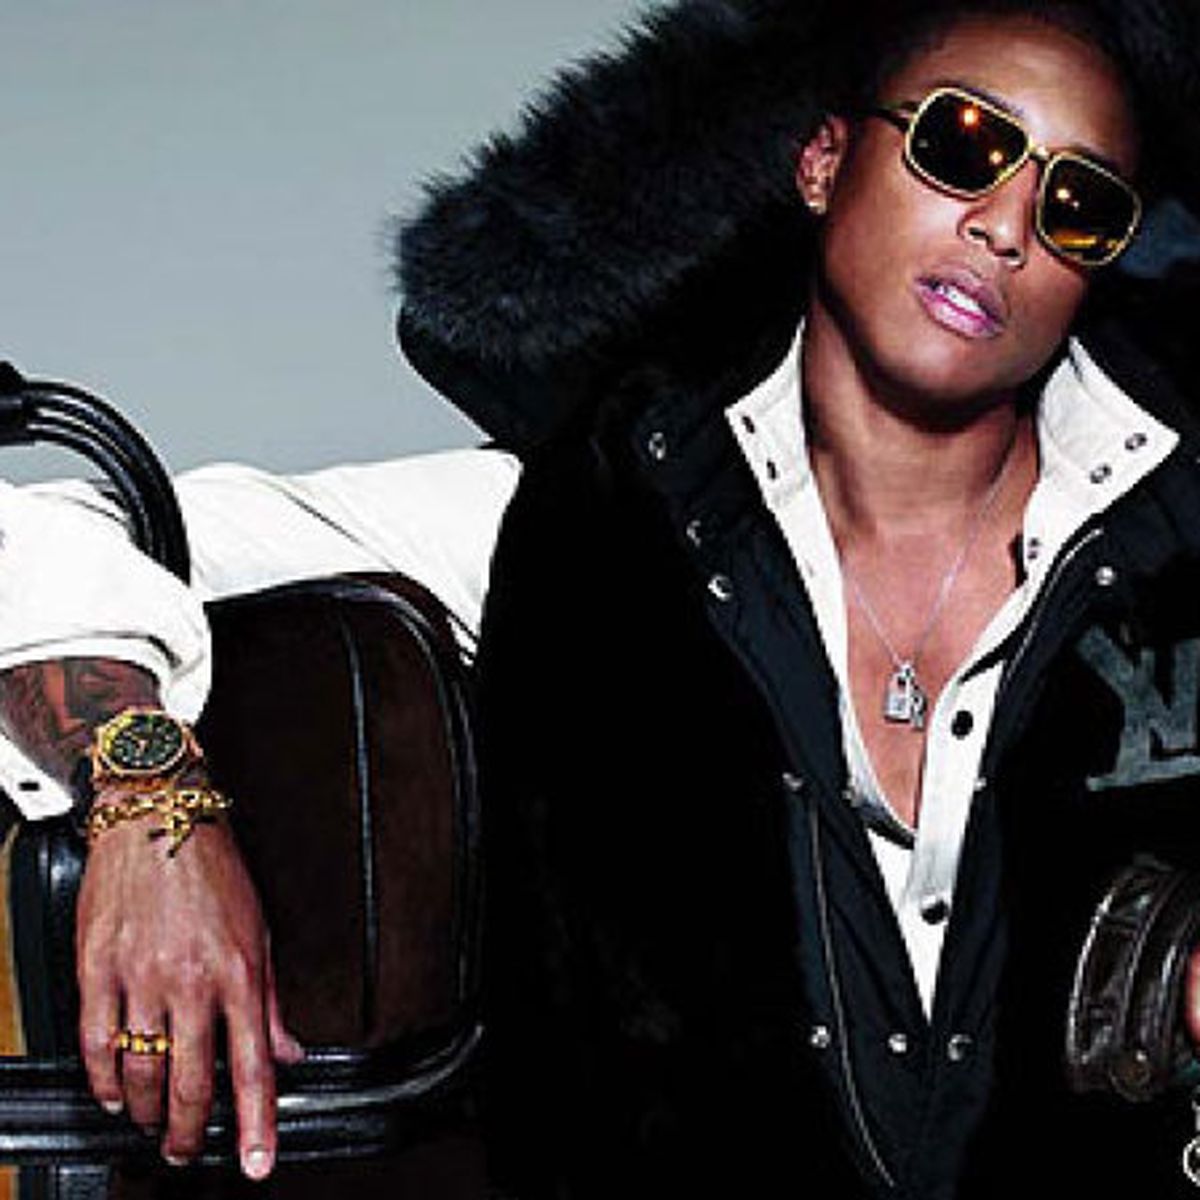 Louis Vuitton presenta la colección de joyas diseñada por el rapero  Pharrell Williams